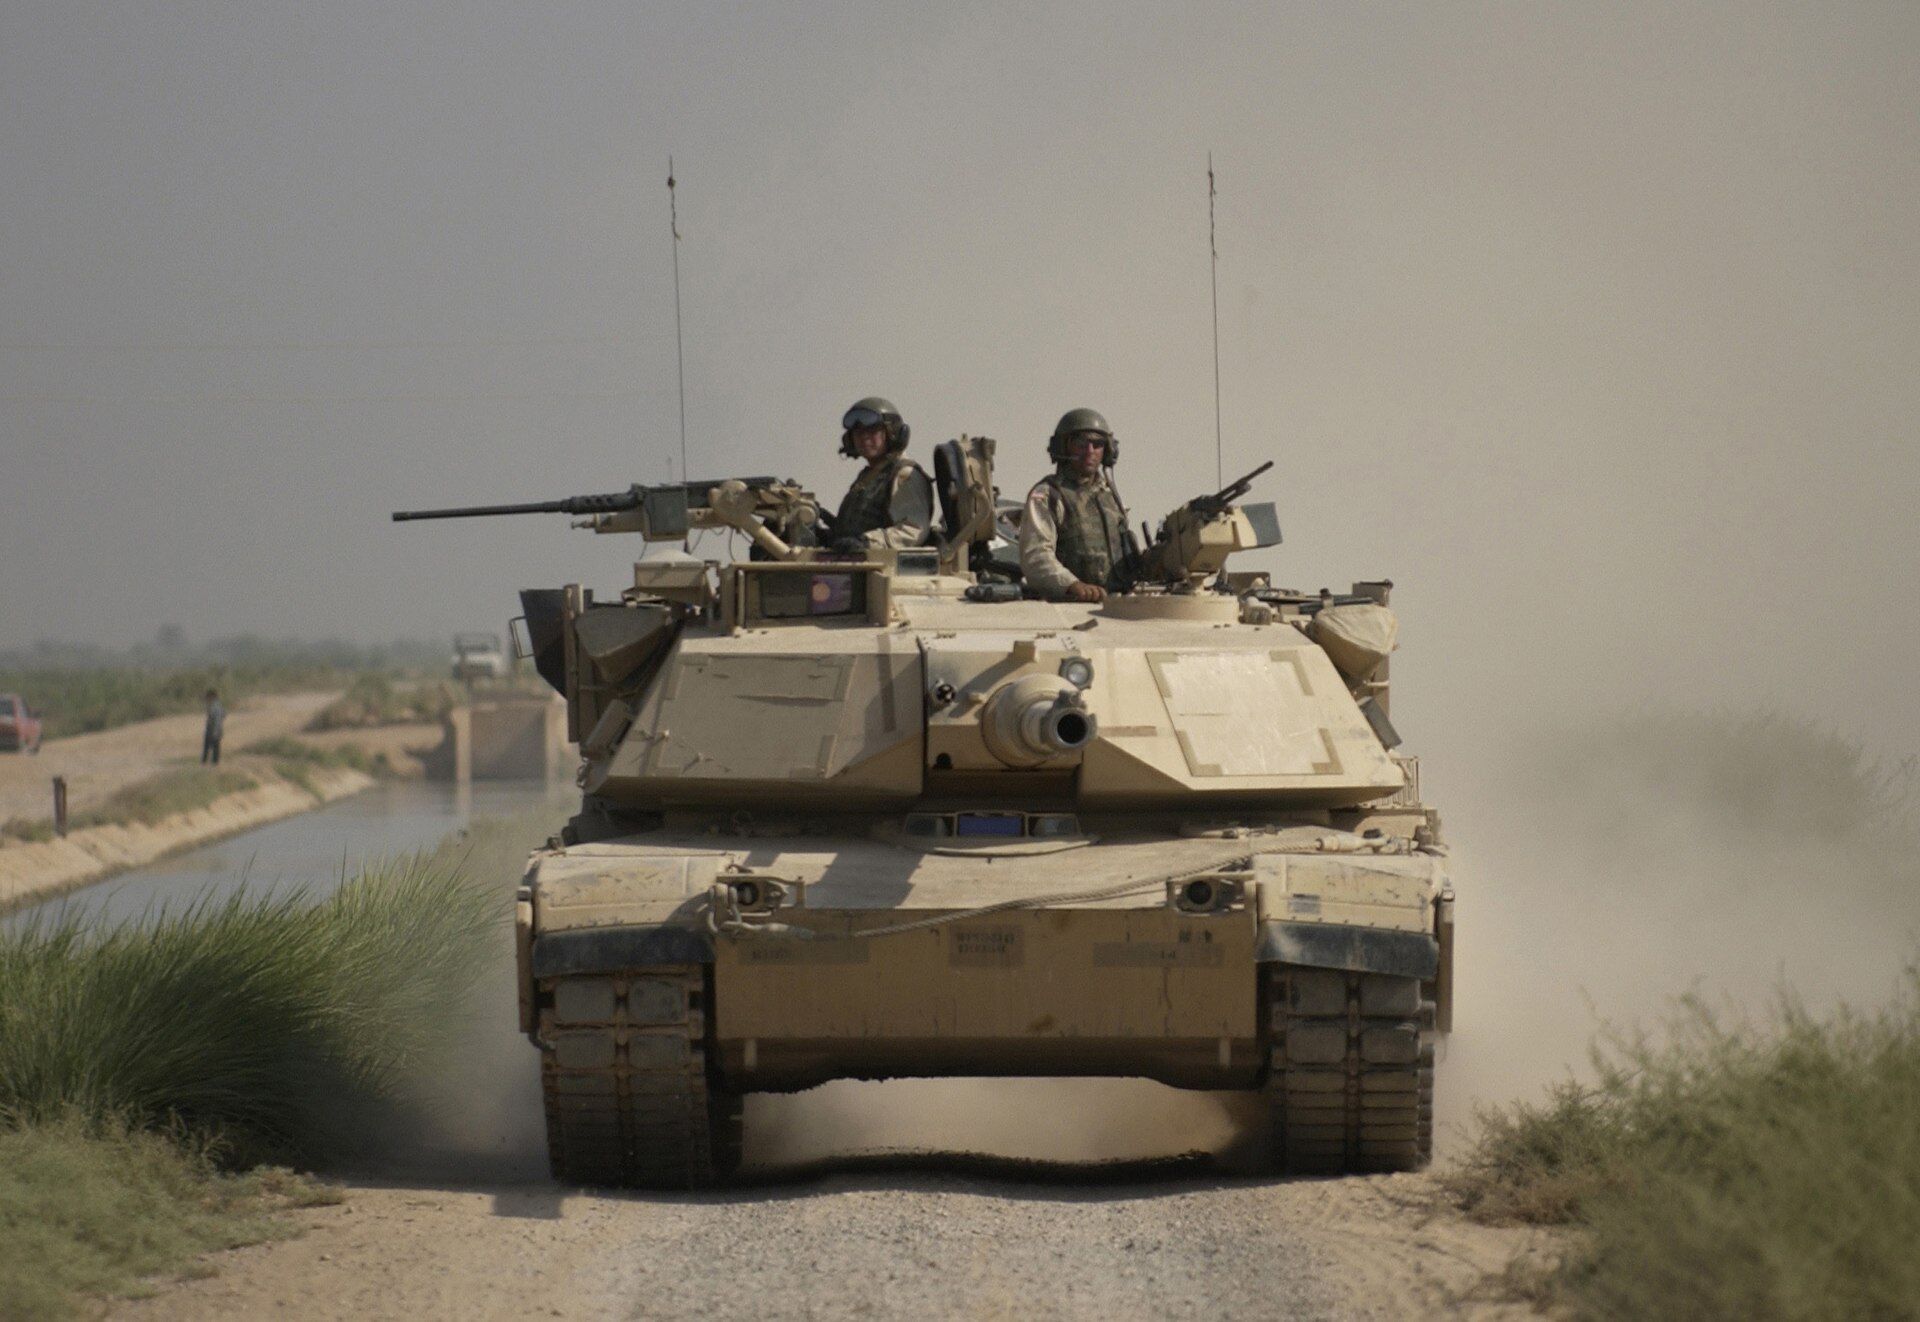 Украинские военные начали обучение на американских танках Abrams в Германии – NYT